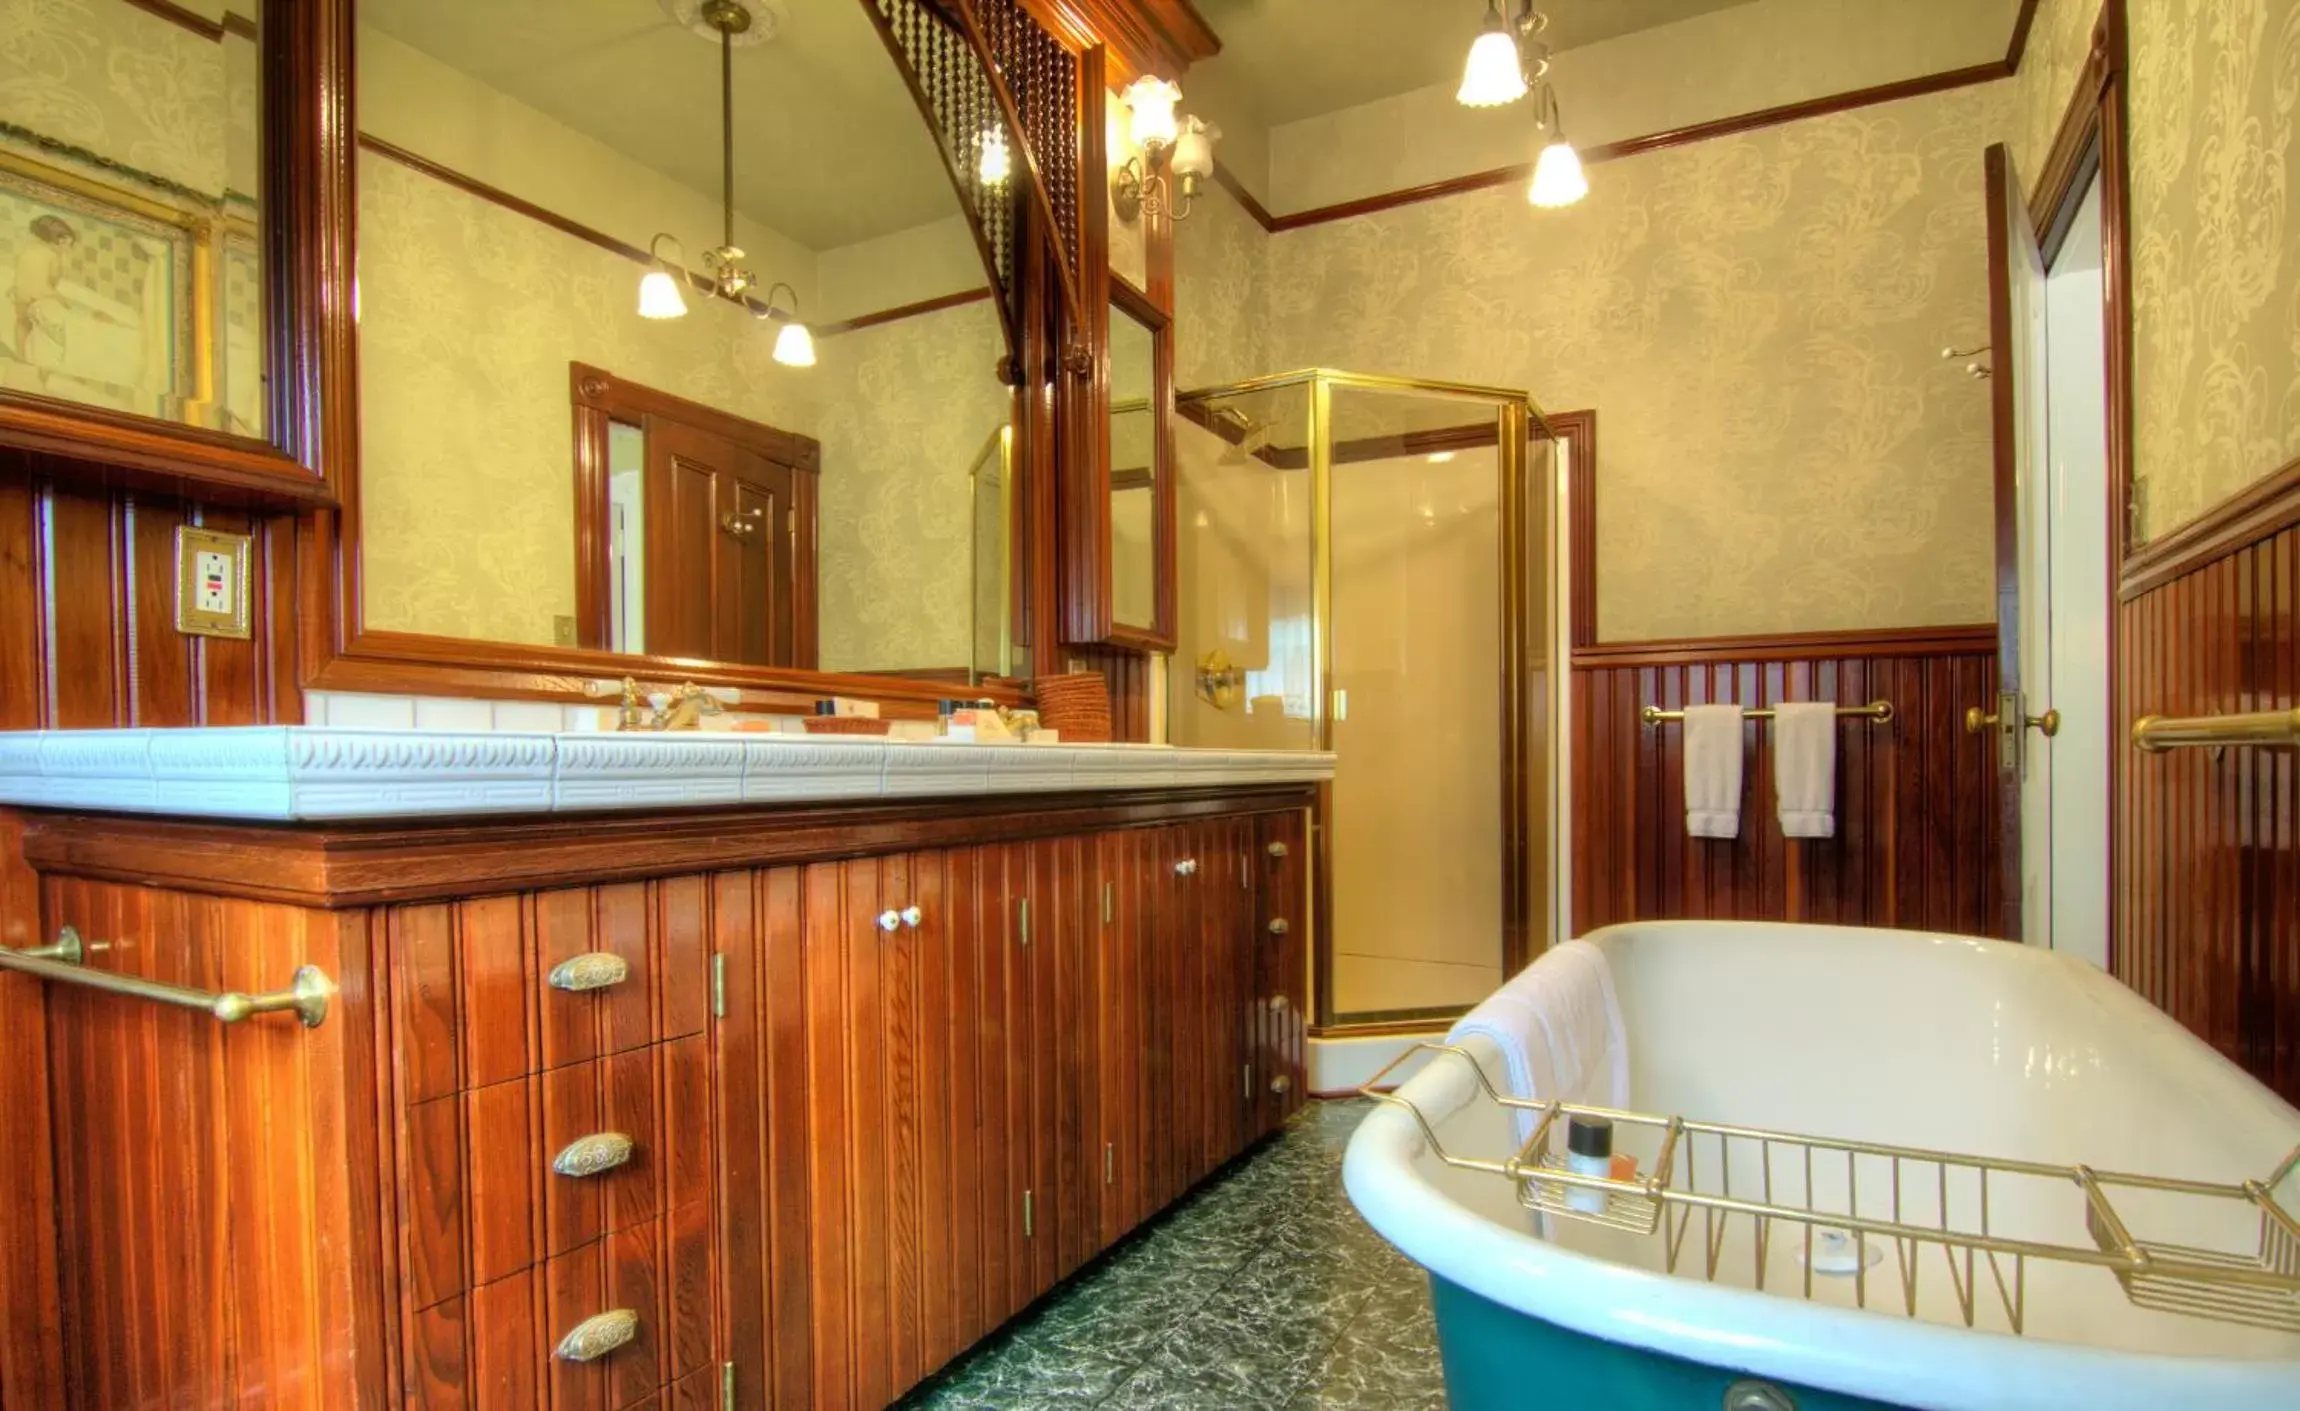 Bathroom, Lobby/Reception in Gingerbread Mansion